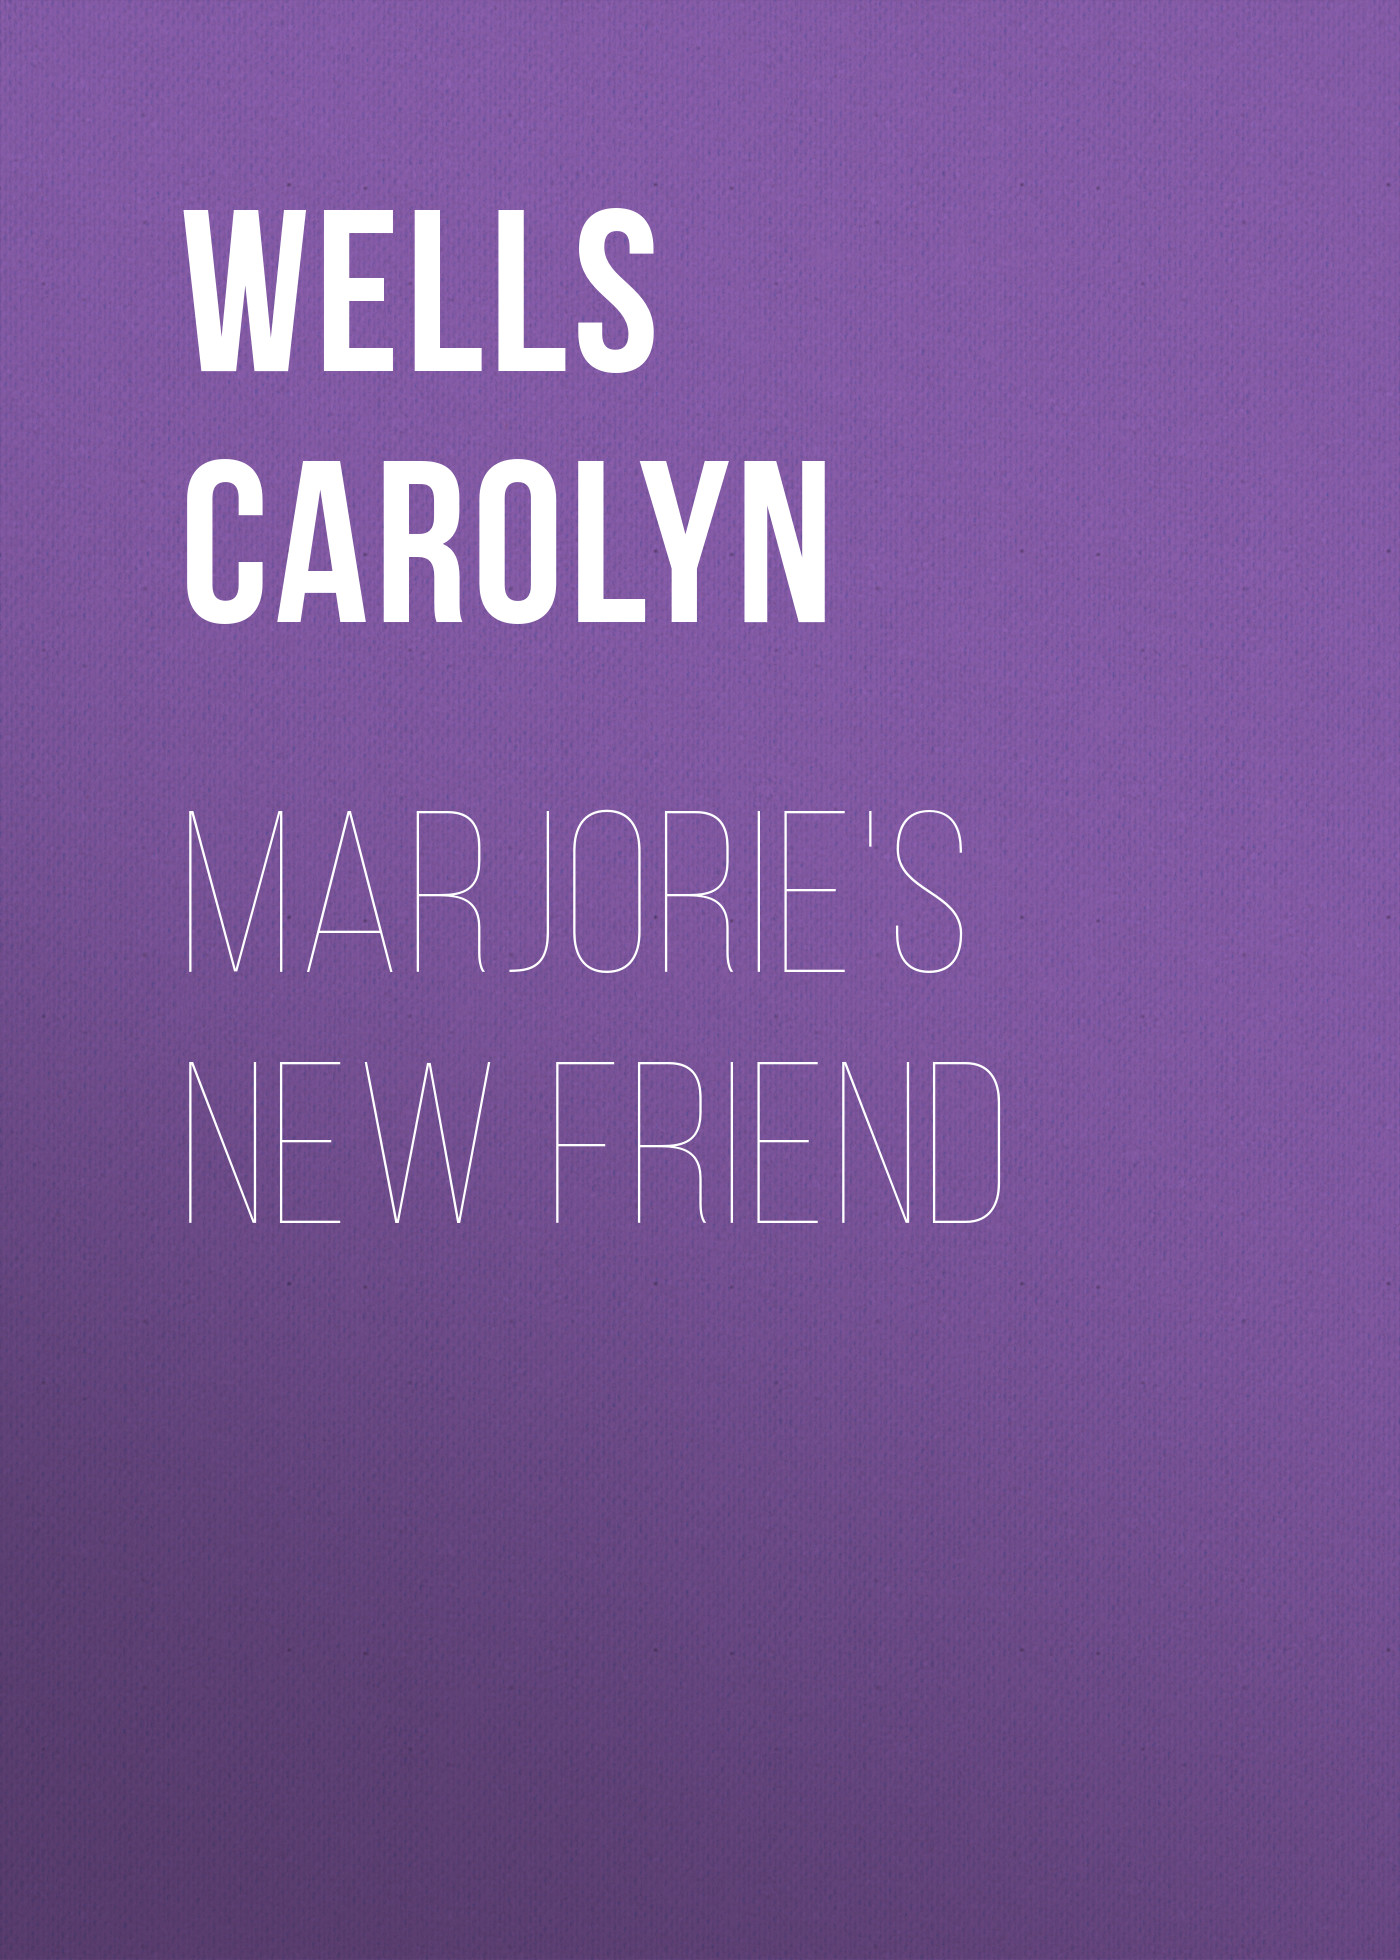 Книга Marjorie's New Friend из серии , созданная Carolyn Wells, может относится к жанру Зарубежные детские книги, Зарубежная старинная литература, Зарубежная классика. Стоимость электронной книги Marjorie's New Friend с идентификатором 36324564 составляет 0 руб.